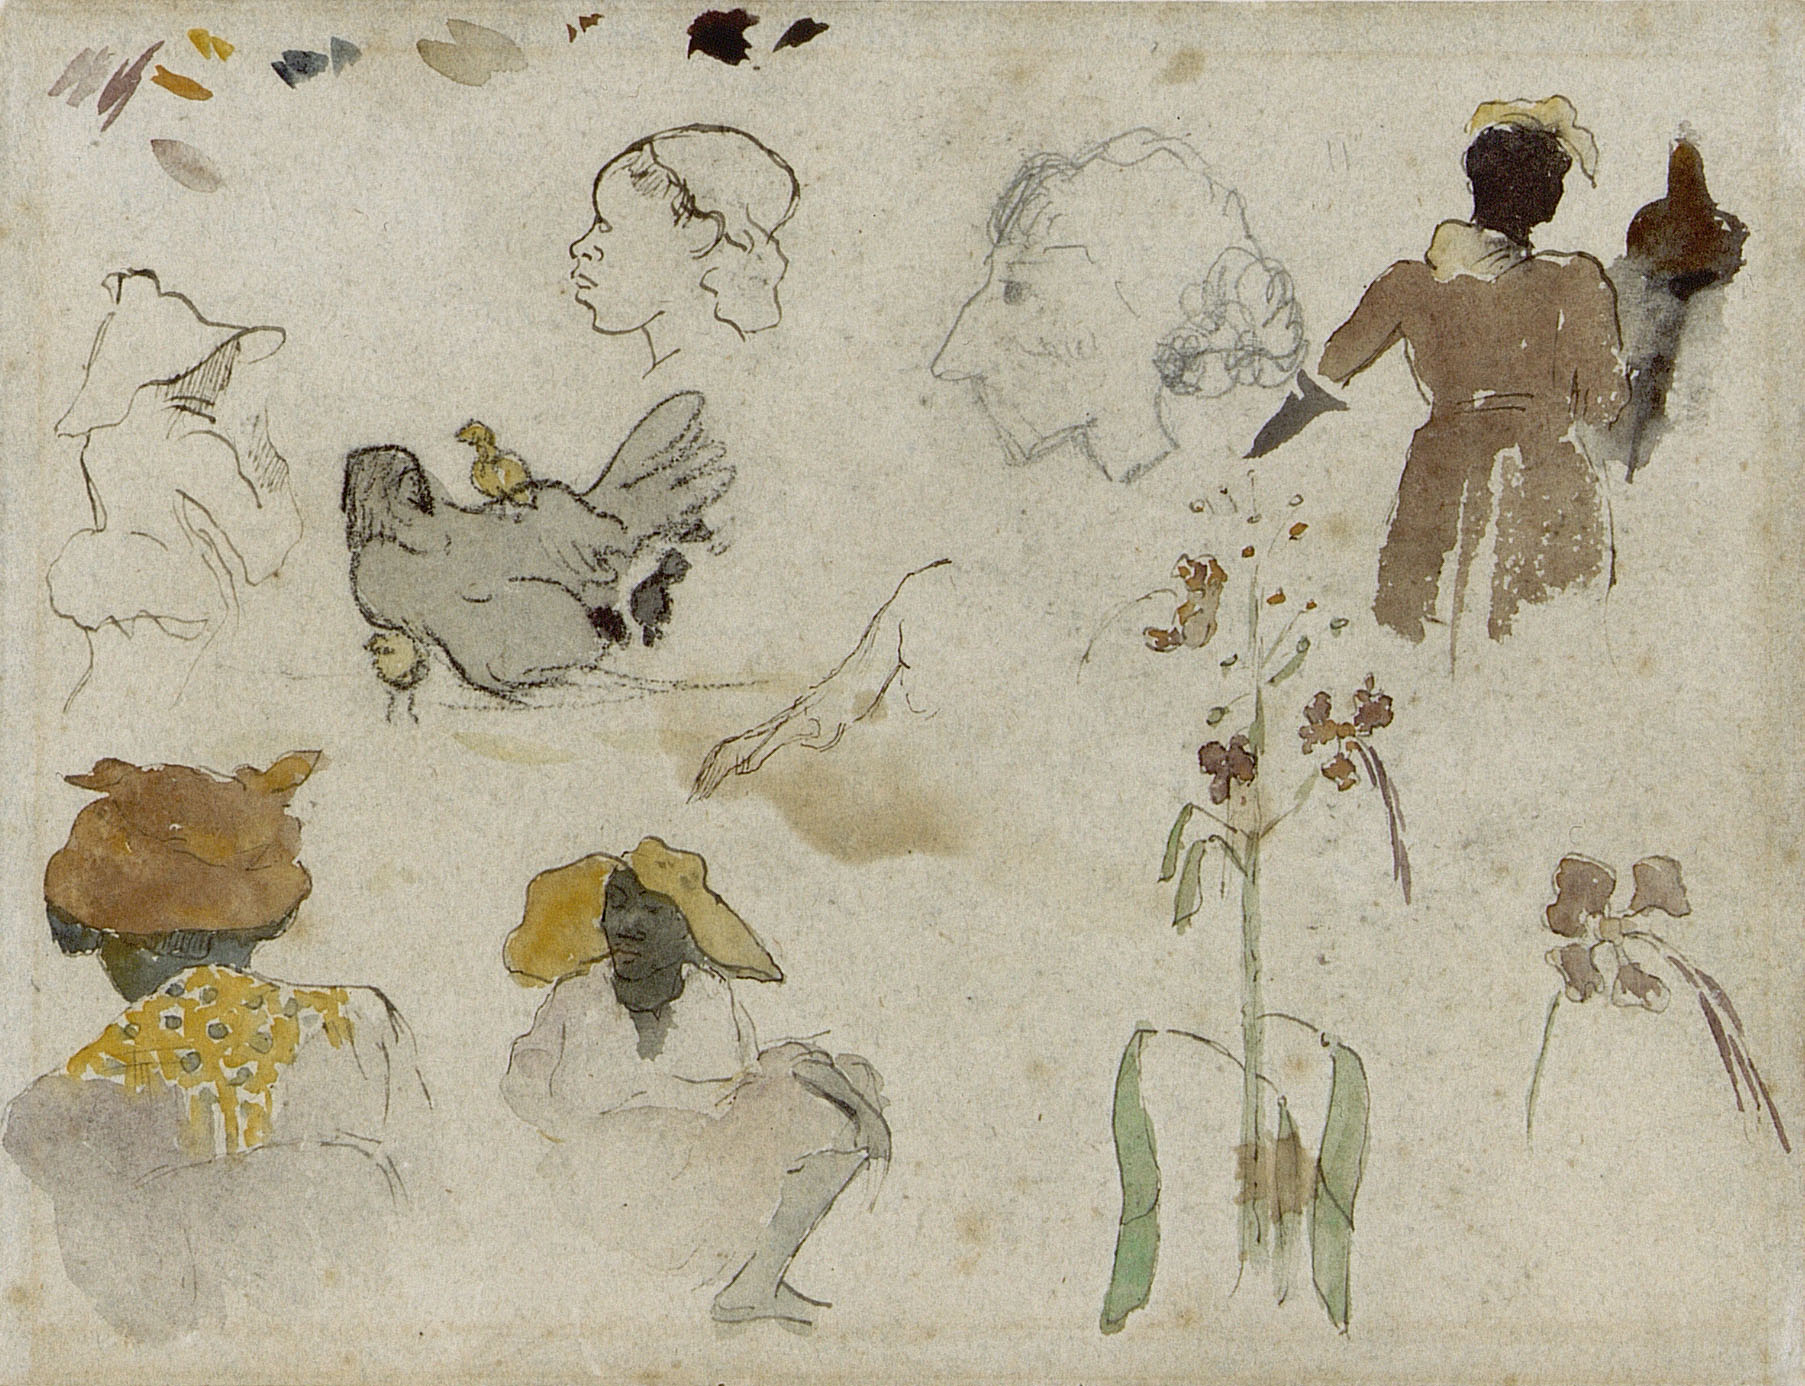 여러 형태들, 꽃들, 그리고 동물의 스케치  by Paul Gauguin - 1887 - 20.4 x 27 cm 